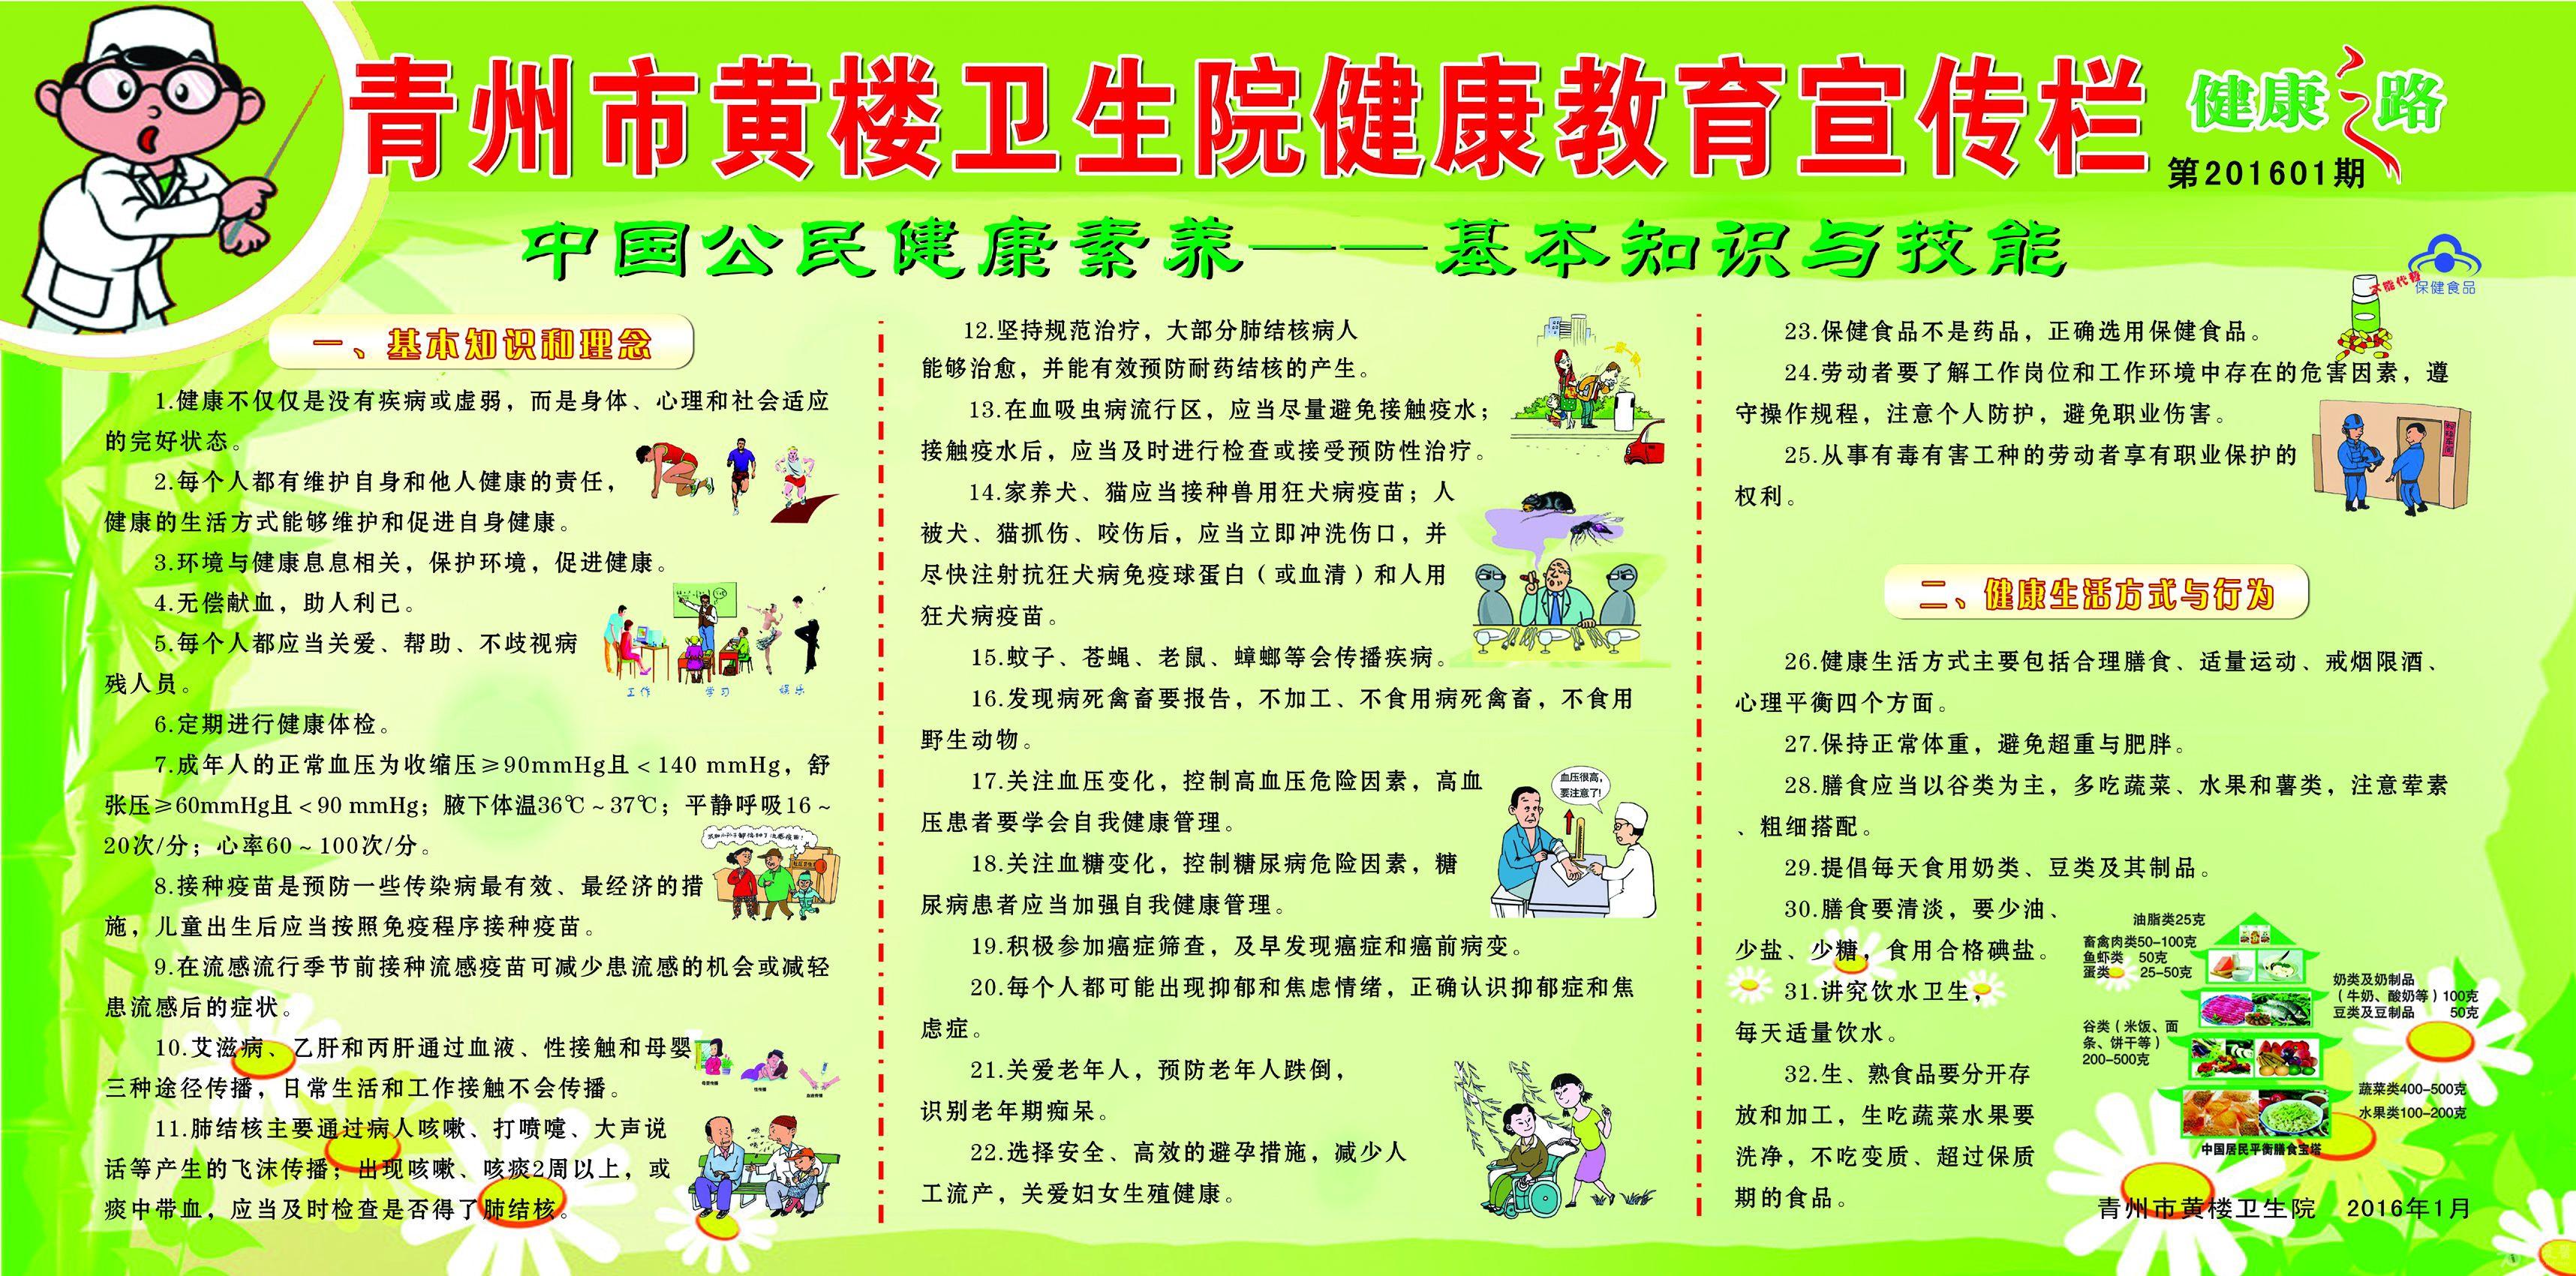 青州市黄楼卫生院健康教育宣传栏第一期2016